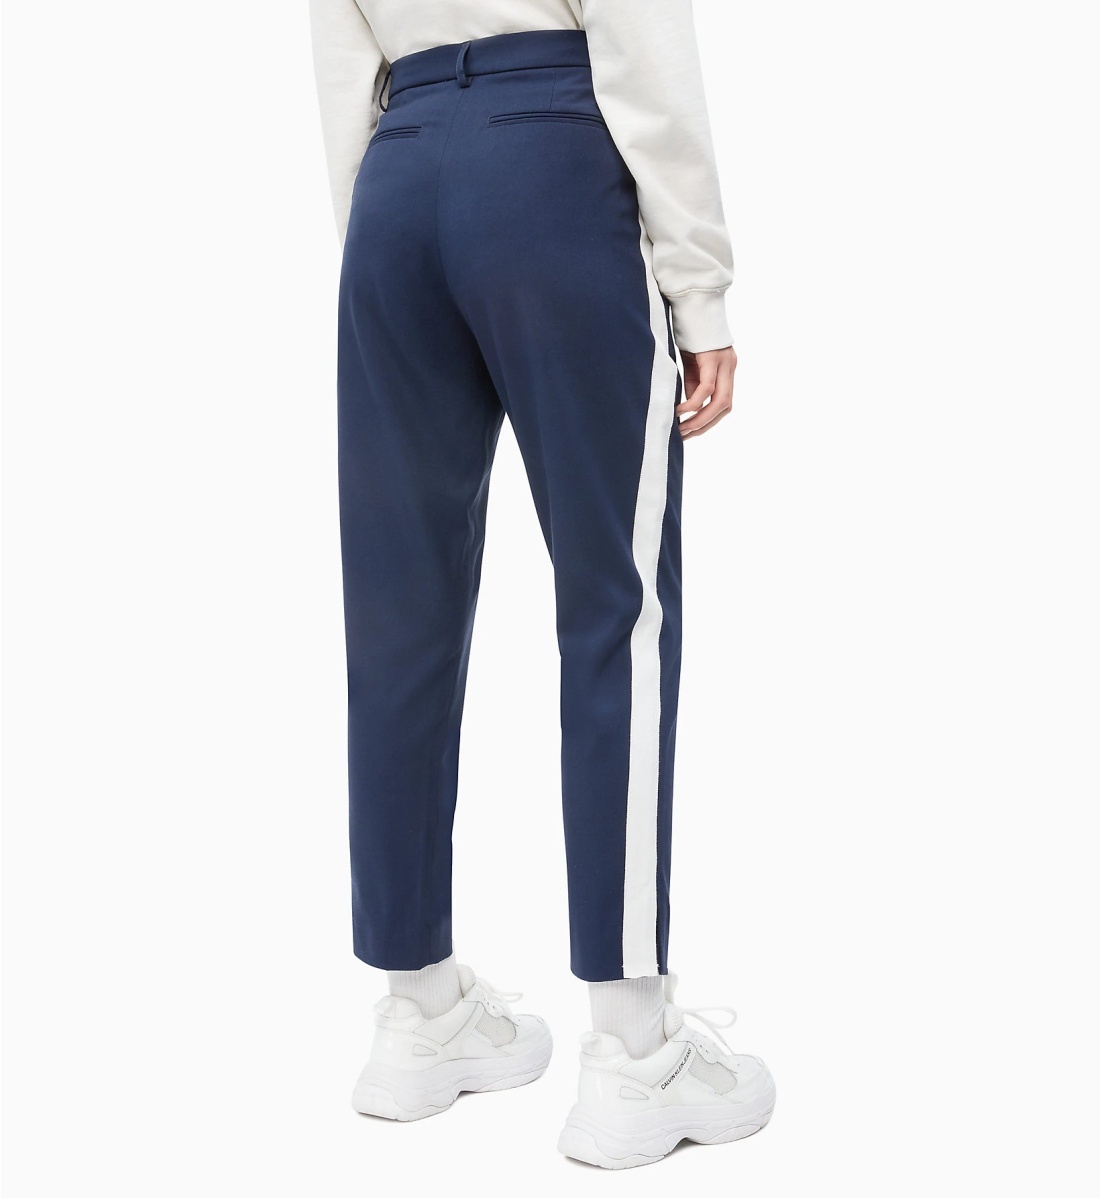 Calvin Klein dámské tmavě modré volnočasové 7/8 kalhoty - 25/30 (496)